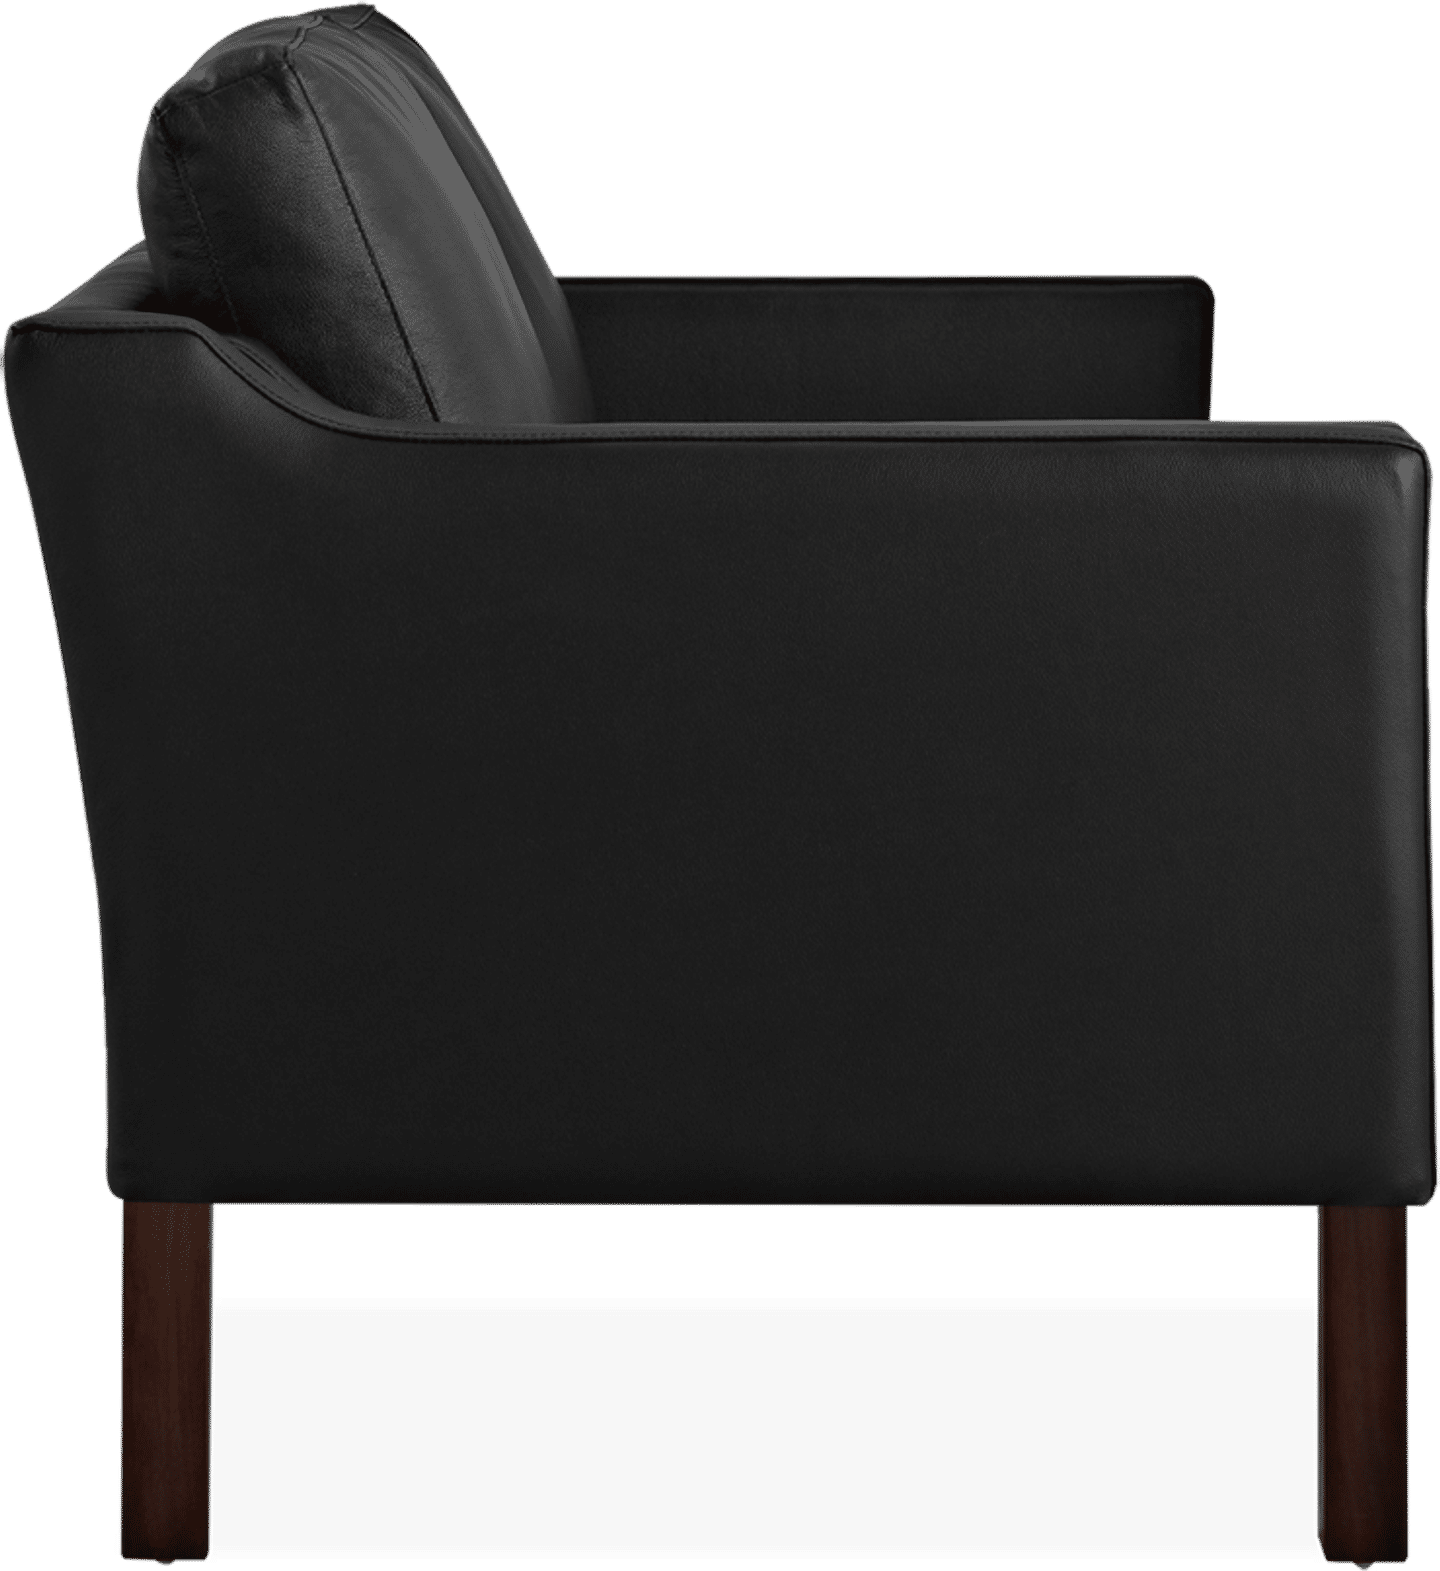 2212 Zweisitziges Sofa Italian Leather/Black image.